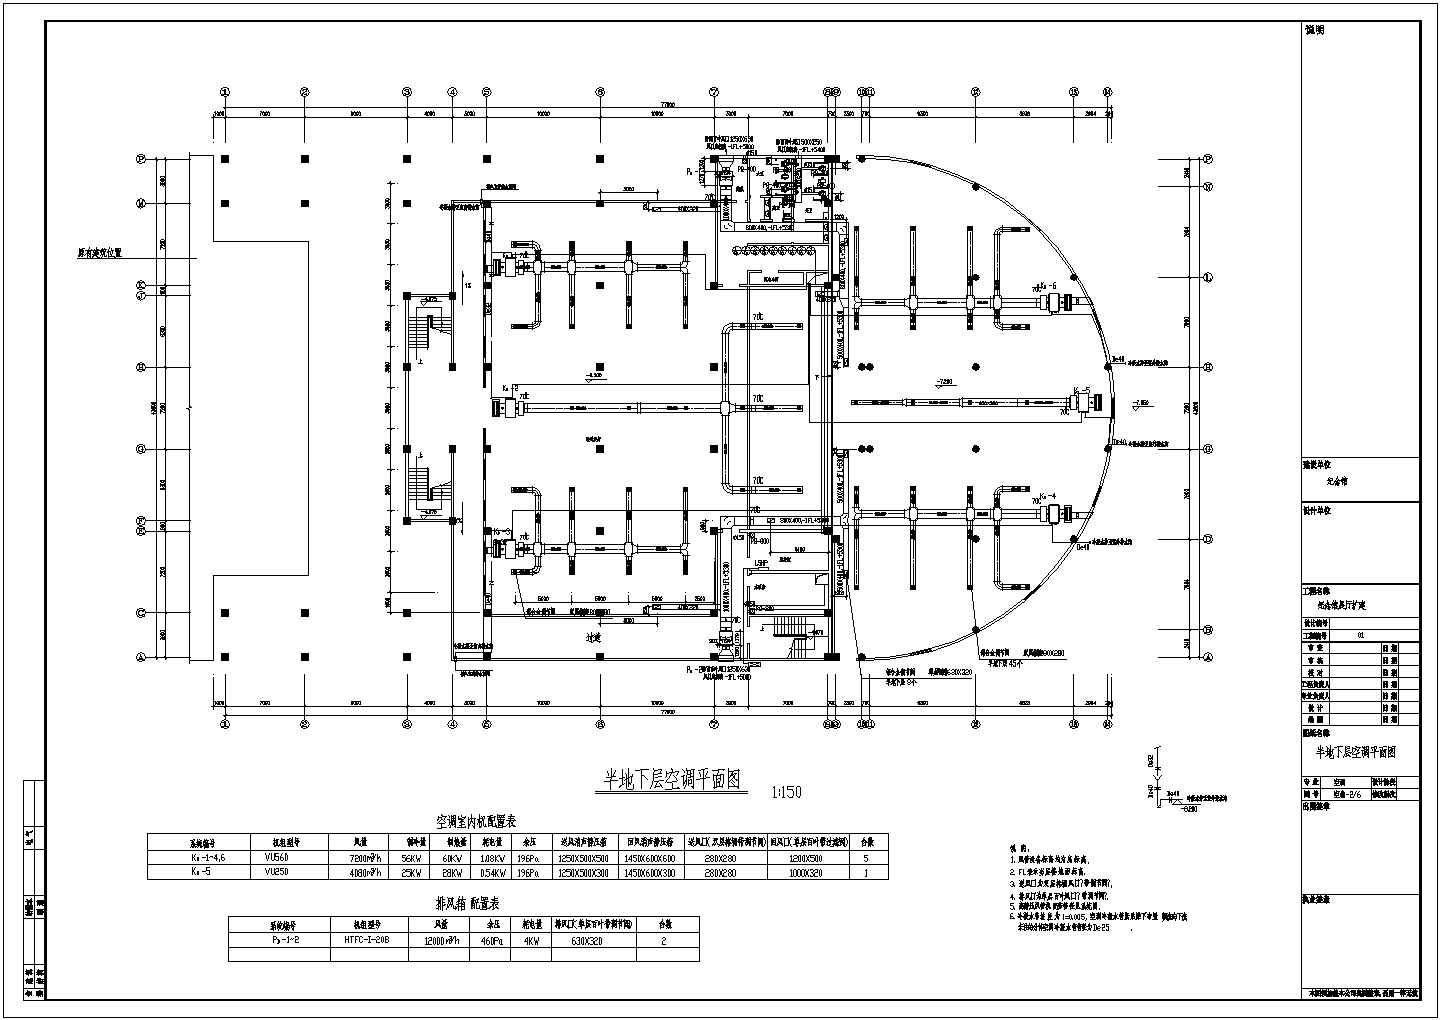 【茅山】某纪念馆空调详细设计施工图